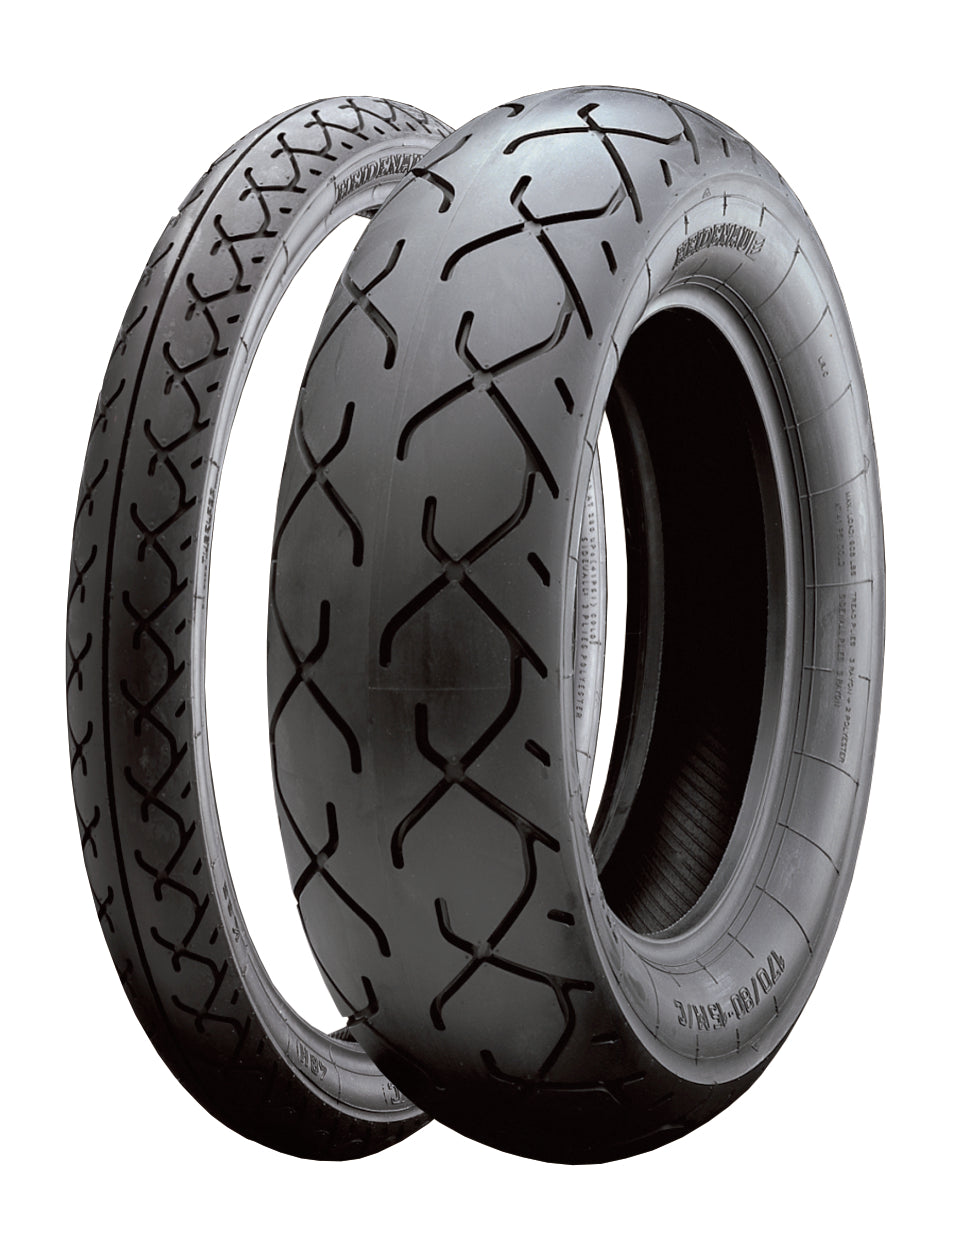 Heidenau K65 100 / 90 – 18 M/C 56H TL Race Front or Rear Tyre